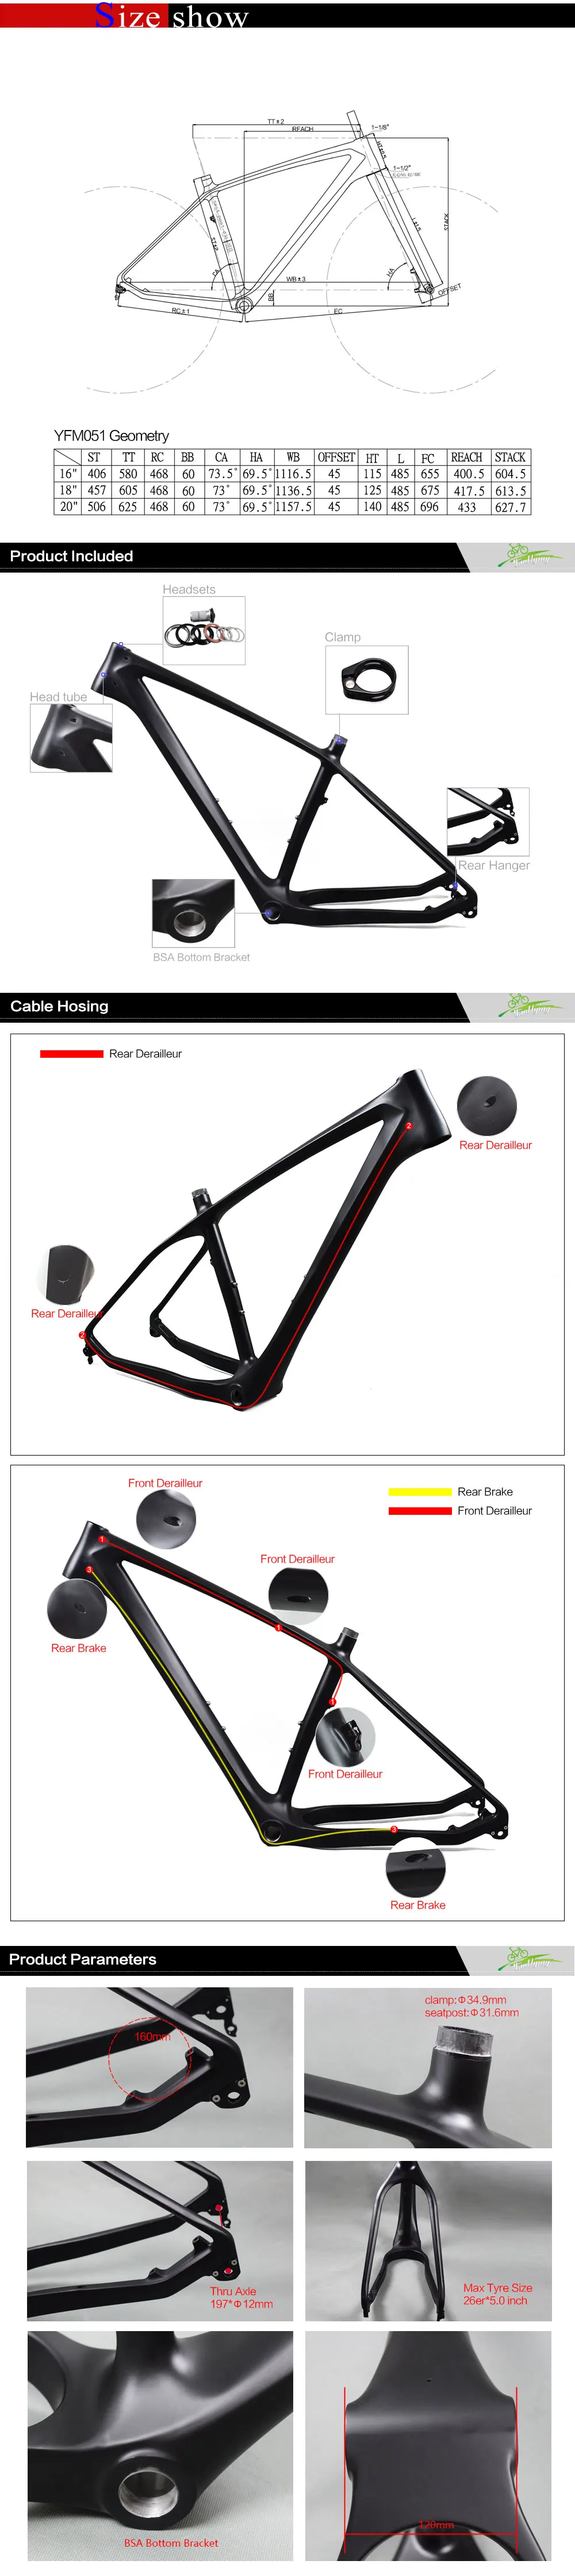 Carbon mtb велосипеда UD черный углерода жира велосипеда 26er 16/18/20 дюймов BSA 197*12 мм через ось рамки углерода mtb рама